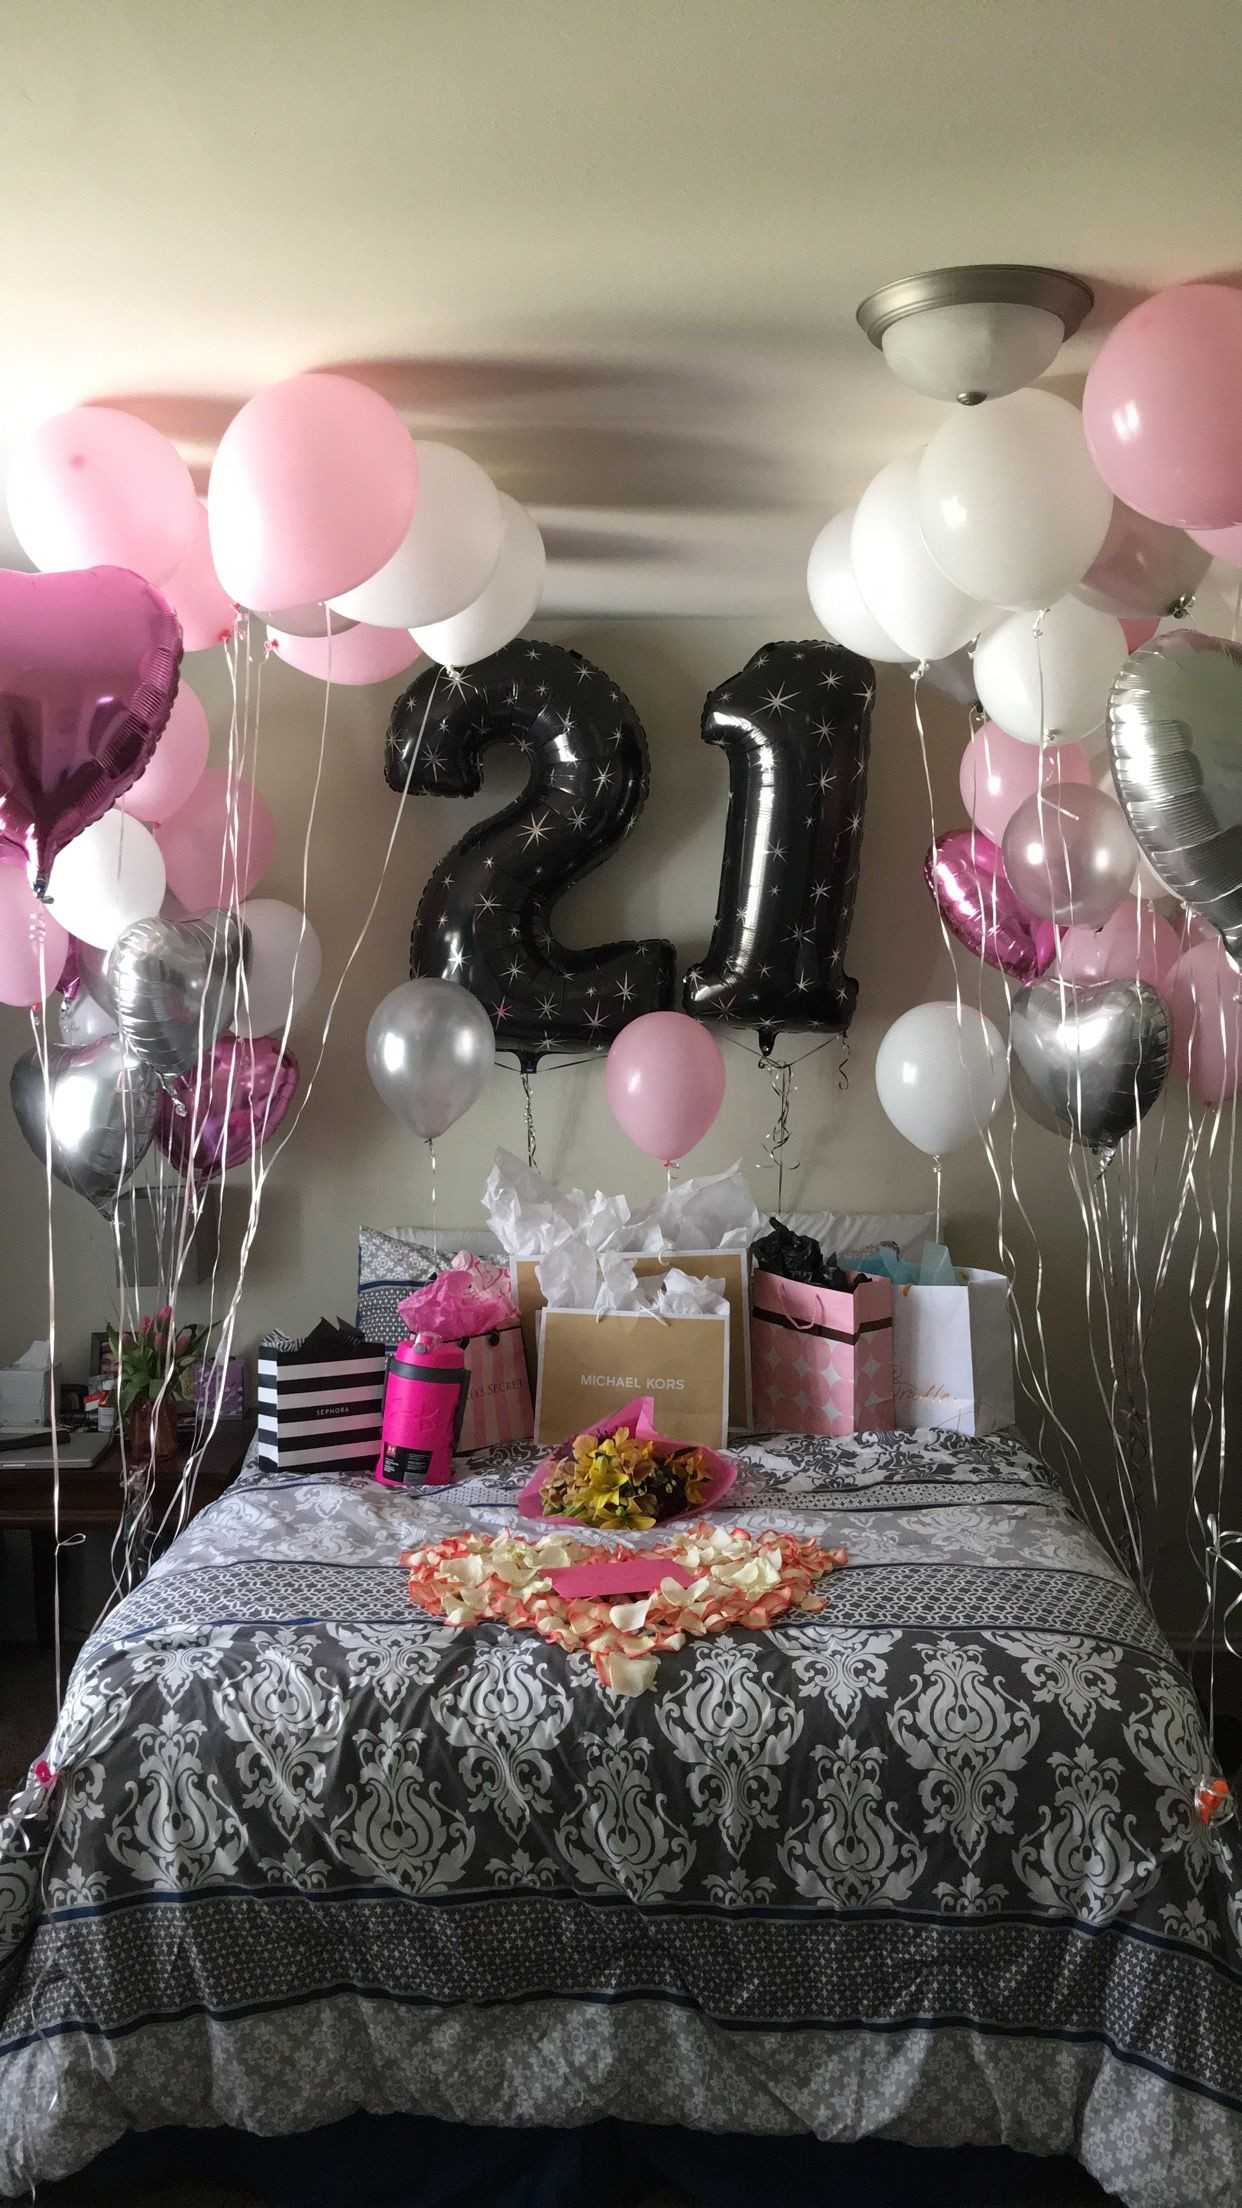 Gift Ideas For Girlfriend 21St Birthday
 21st Birthday surprise